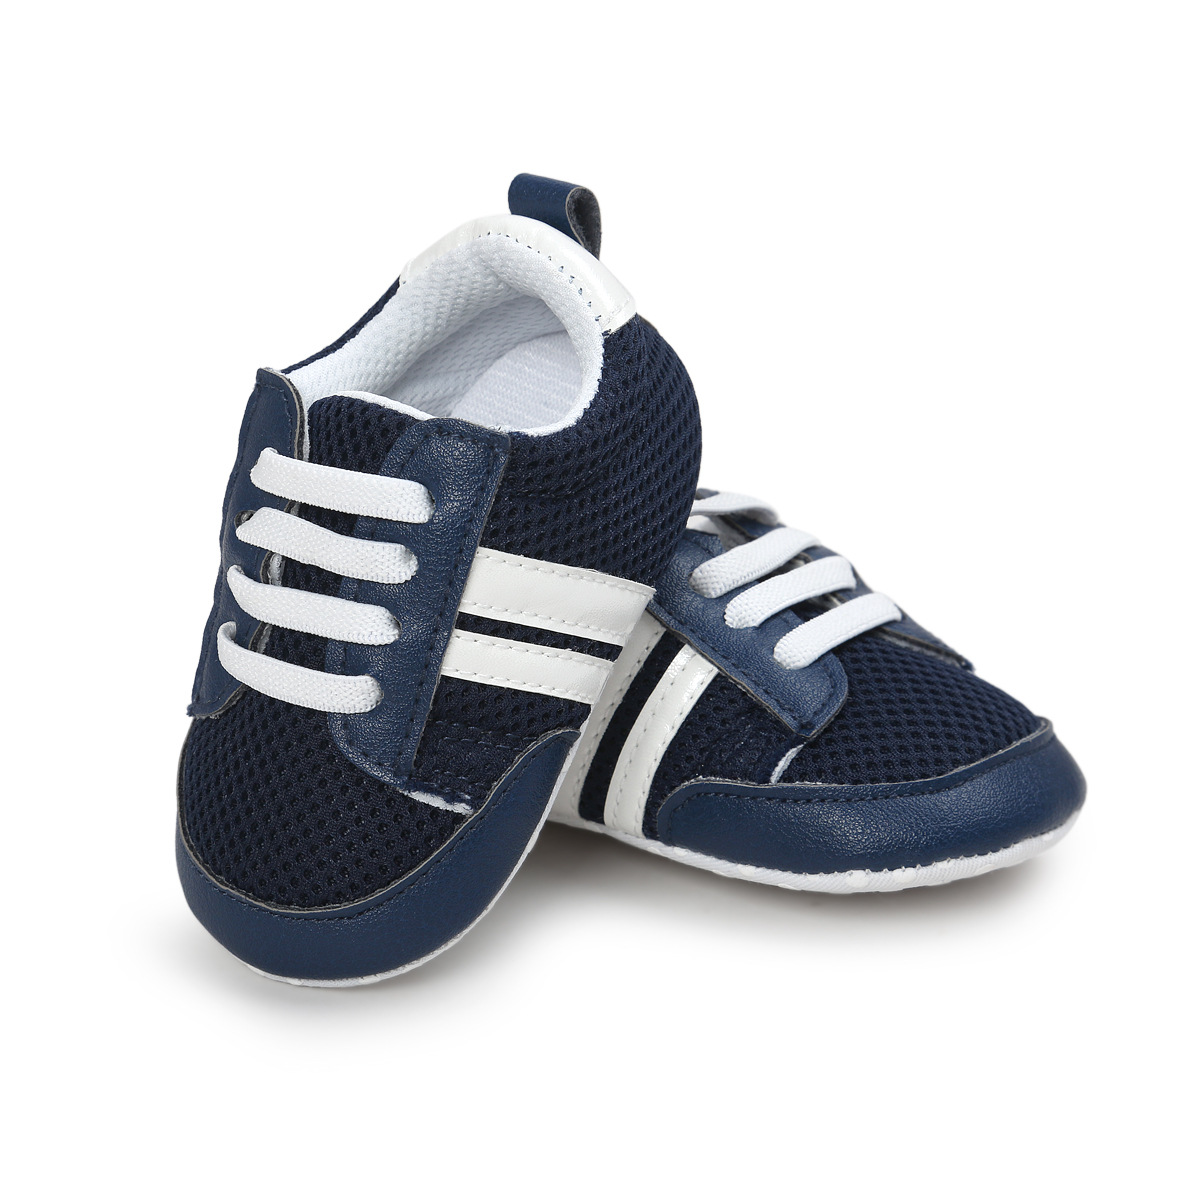 Chaussures bébé en PU artificiel - Ref 3436666 Image 44